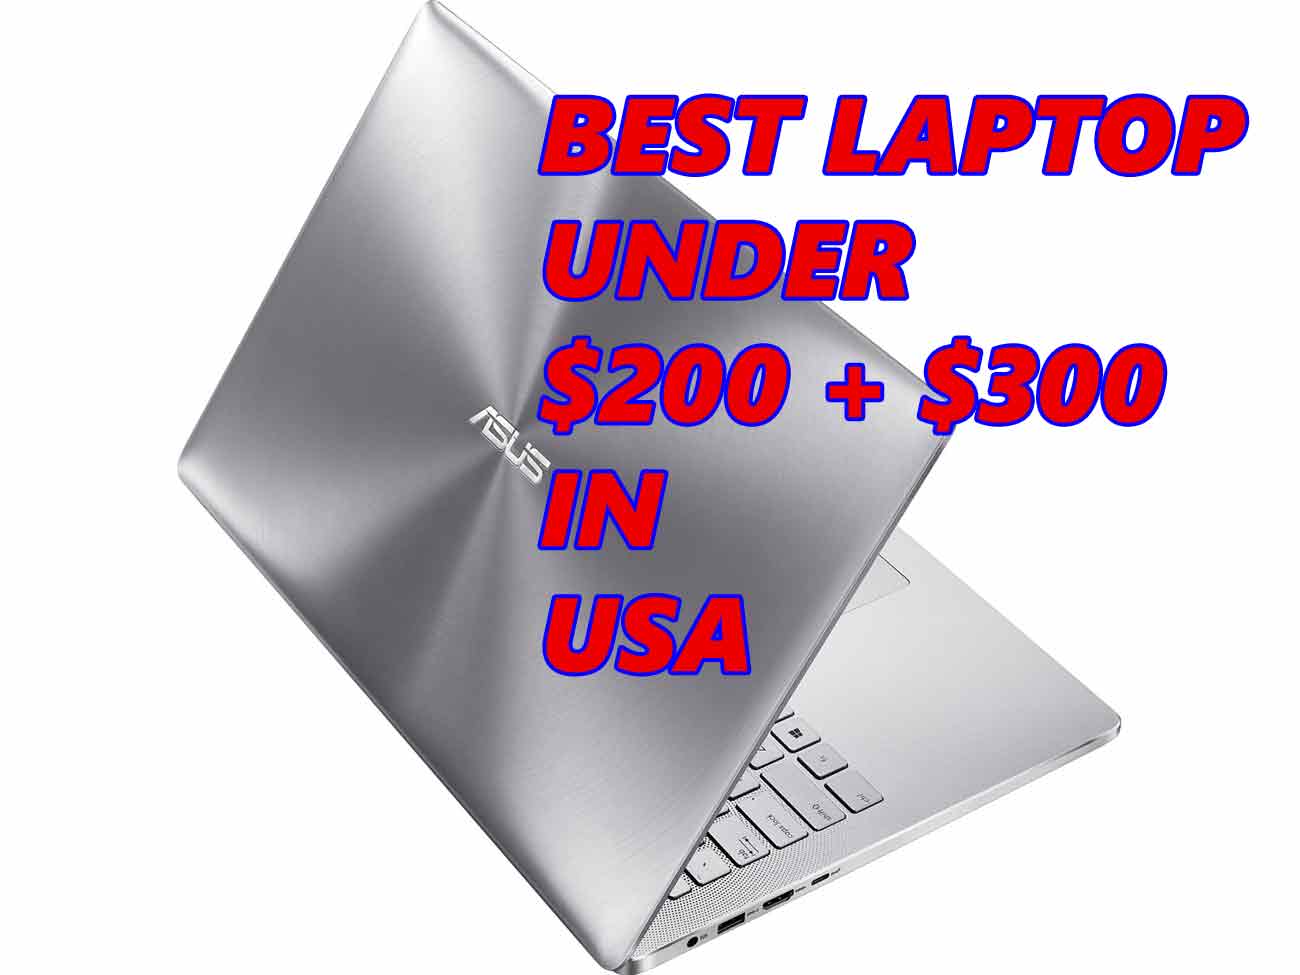 best laptop under 200 300 USA 2020